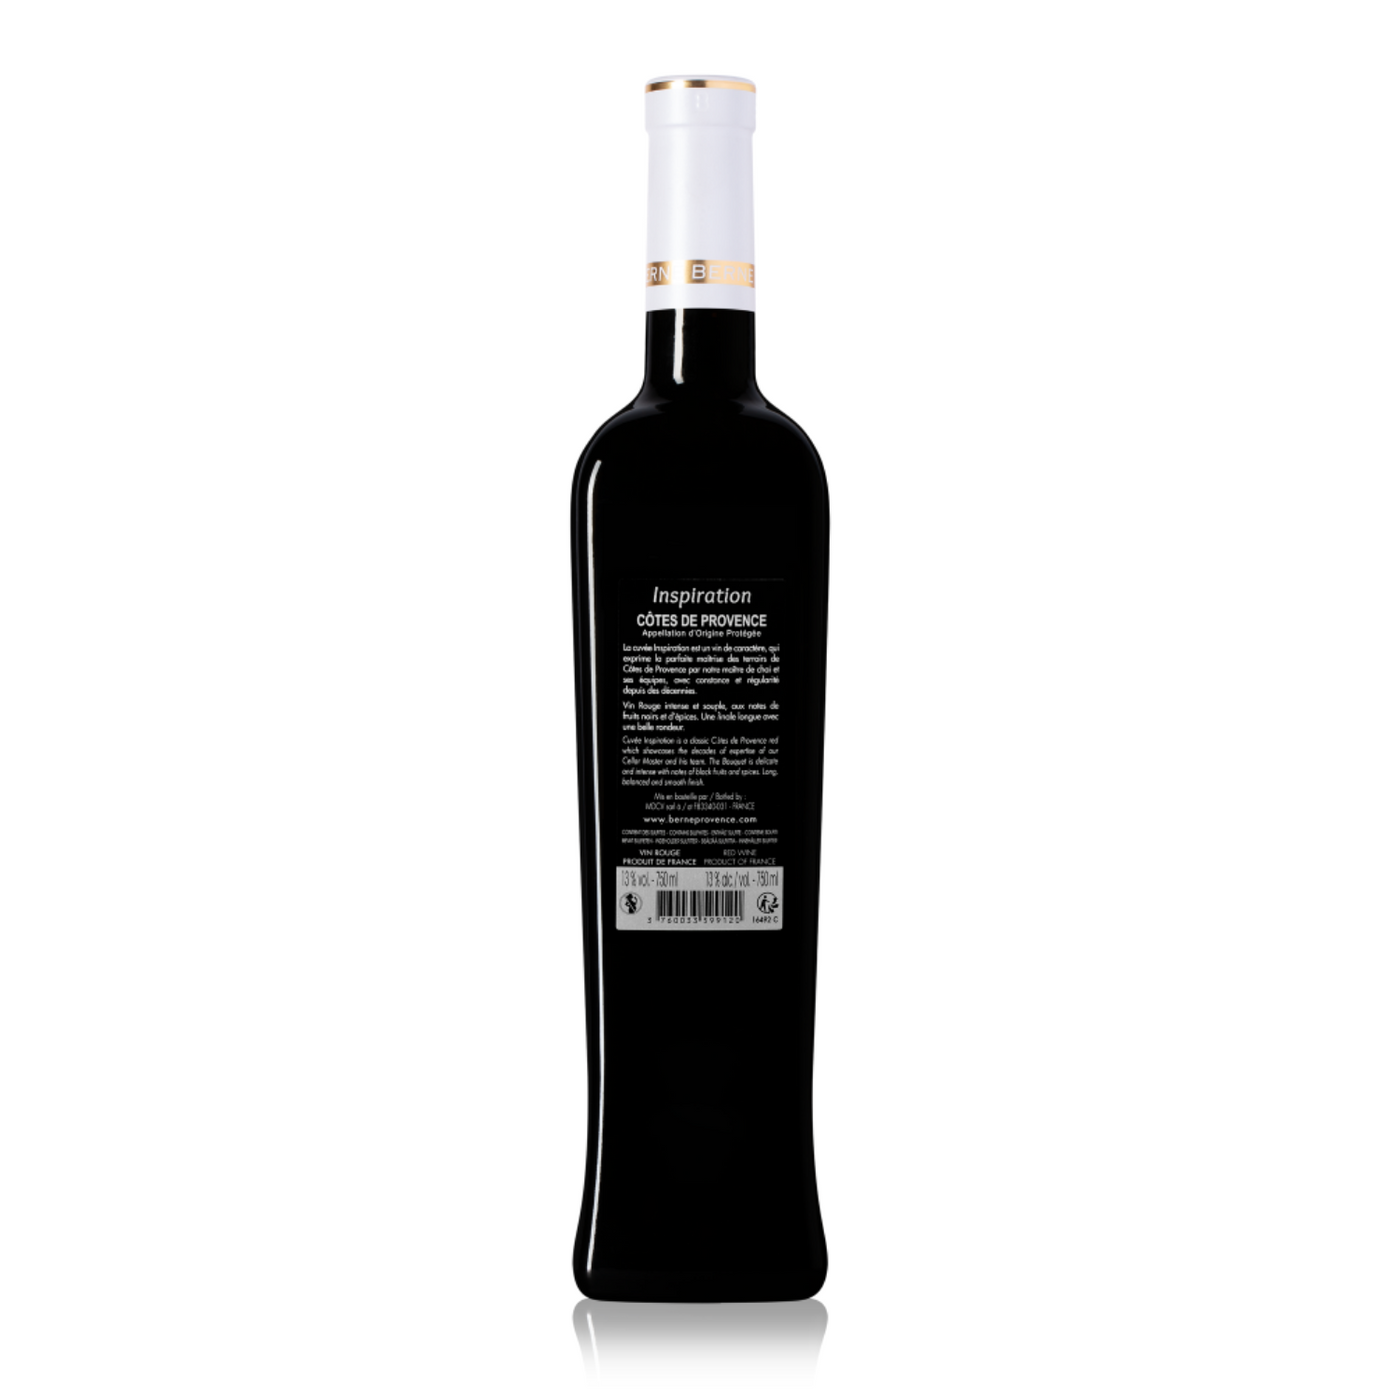 Vin Rouge 2016 AOP Côtes de Provence - Inspiration